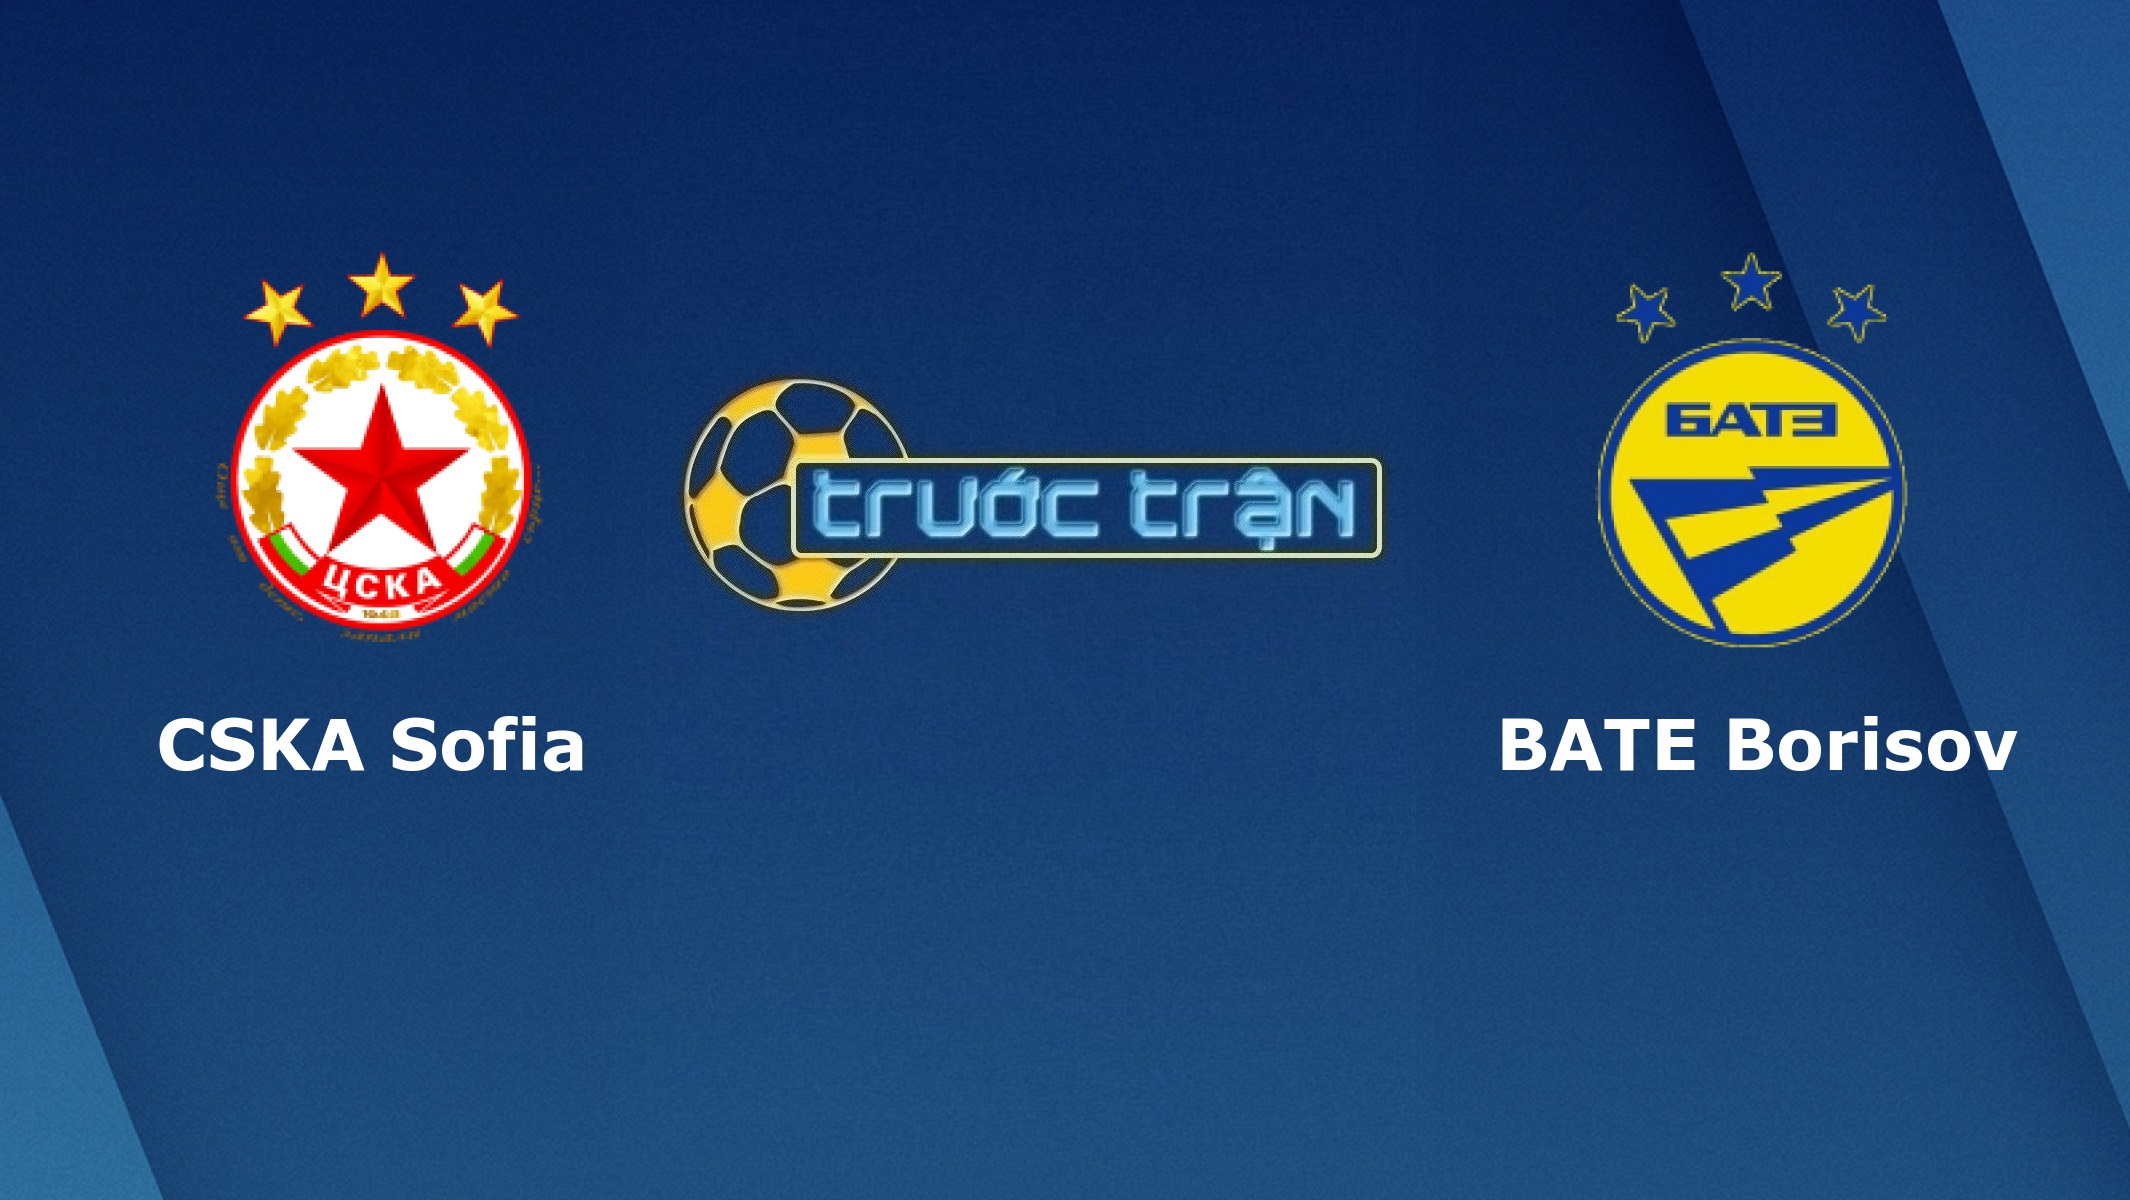 CSKA Sofia vs BATE Borisov – Tip kèo bóng đá hôm nay – 18/09